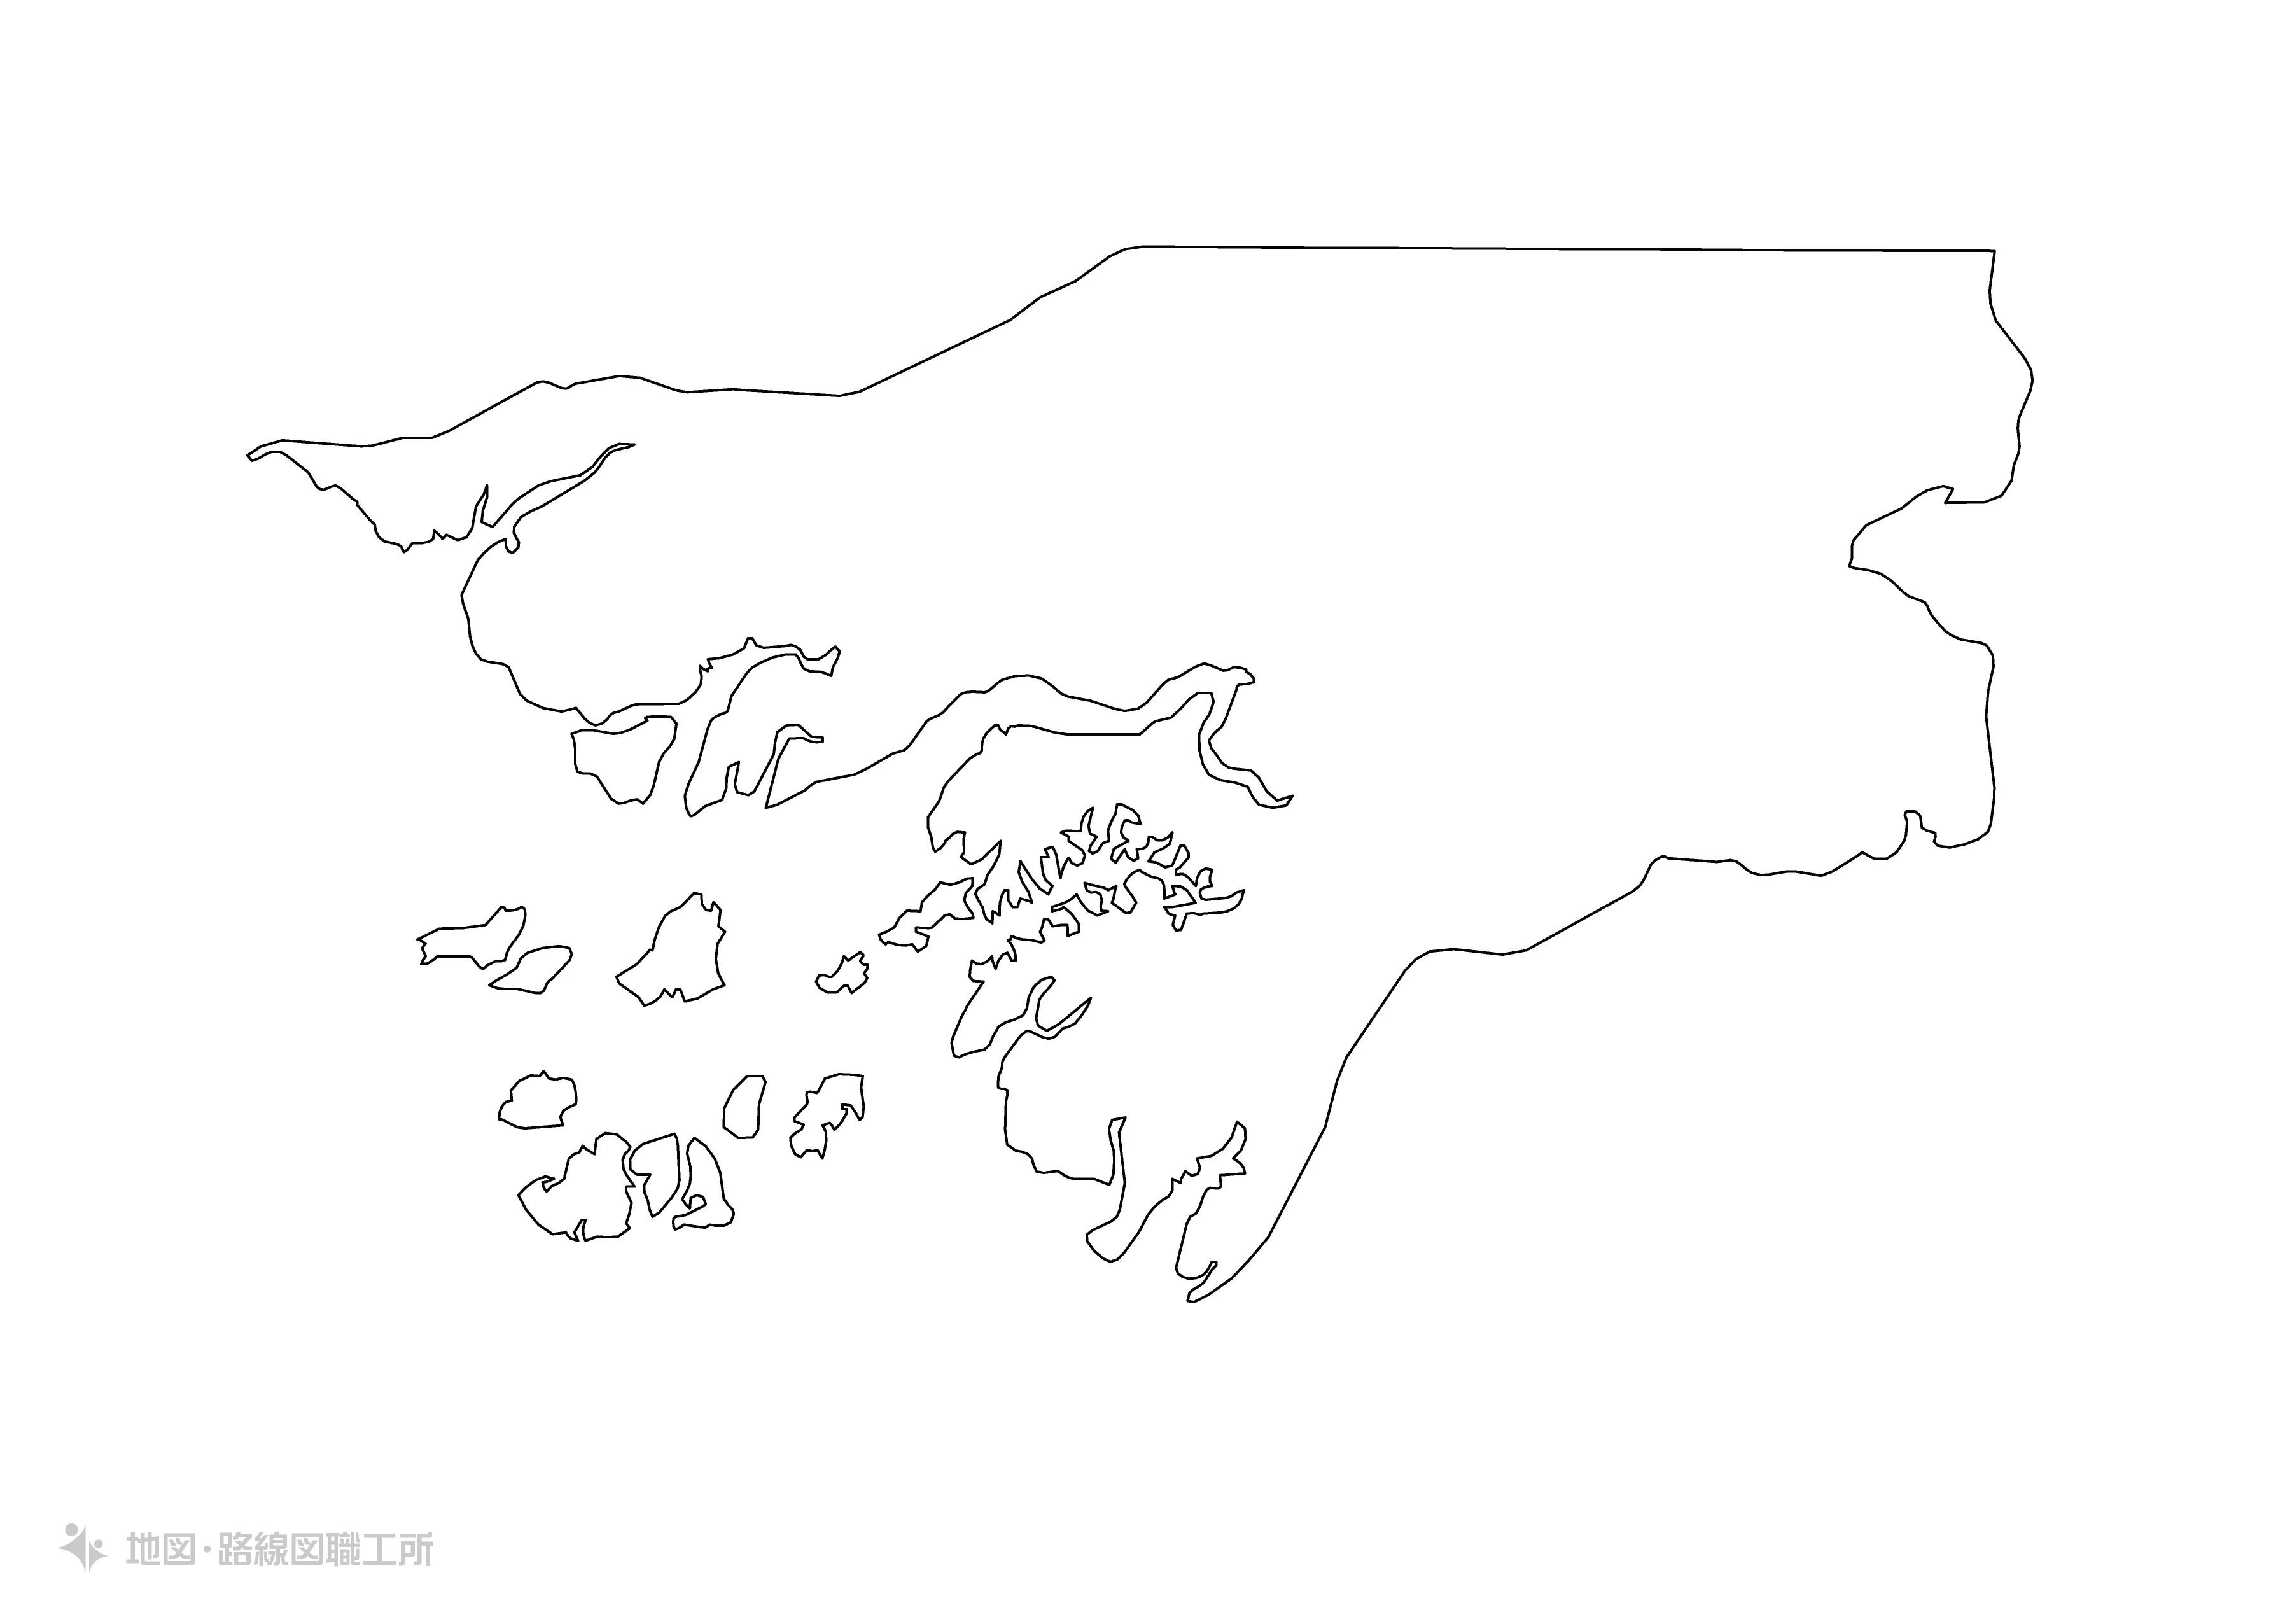 世界の白地図 ギニアビザウ共和国 republic-of-guinea-bissau map 